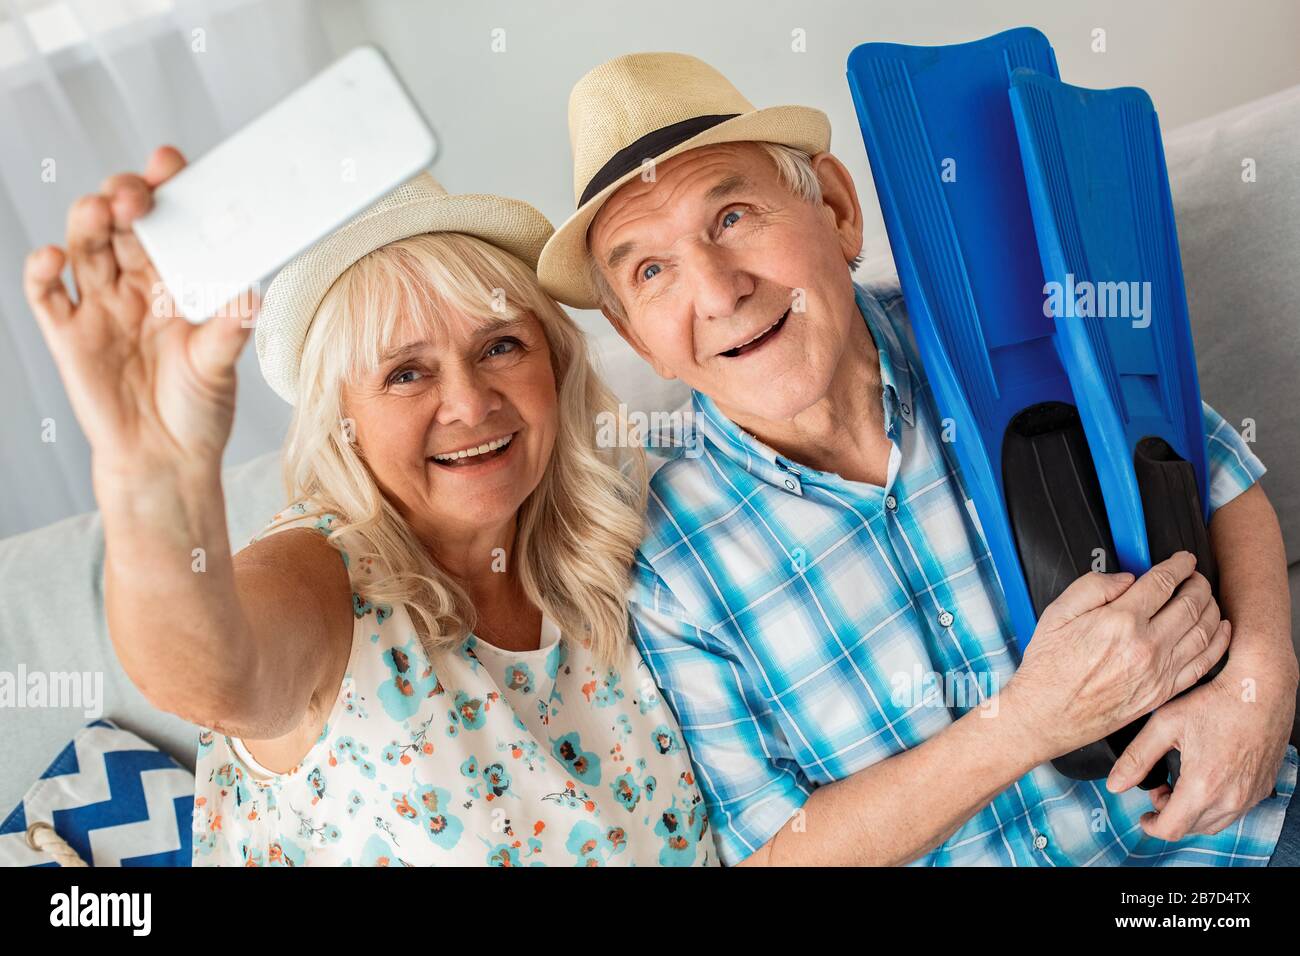 Leitender Mann und Frau sitzen im Reisebüro auf dem Sofa und tragen Strandhüte Ehemann, der Flipper hält, während die Frau das Smartphone bei selfie hält Stockfoto